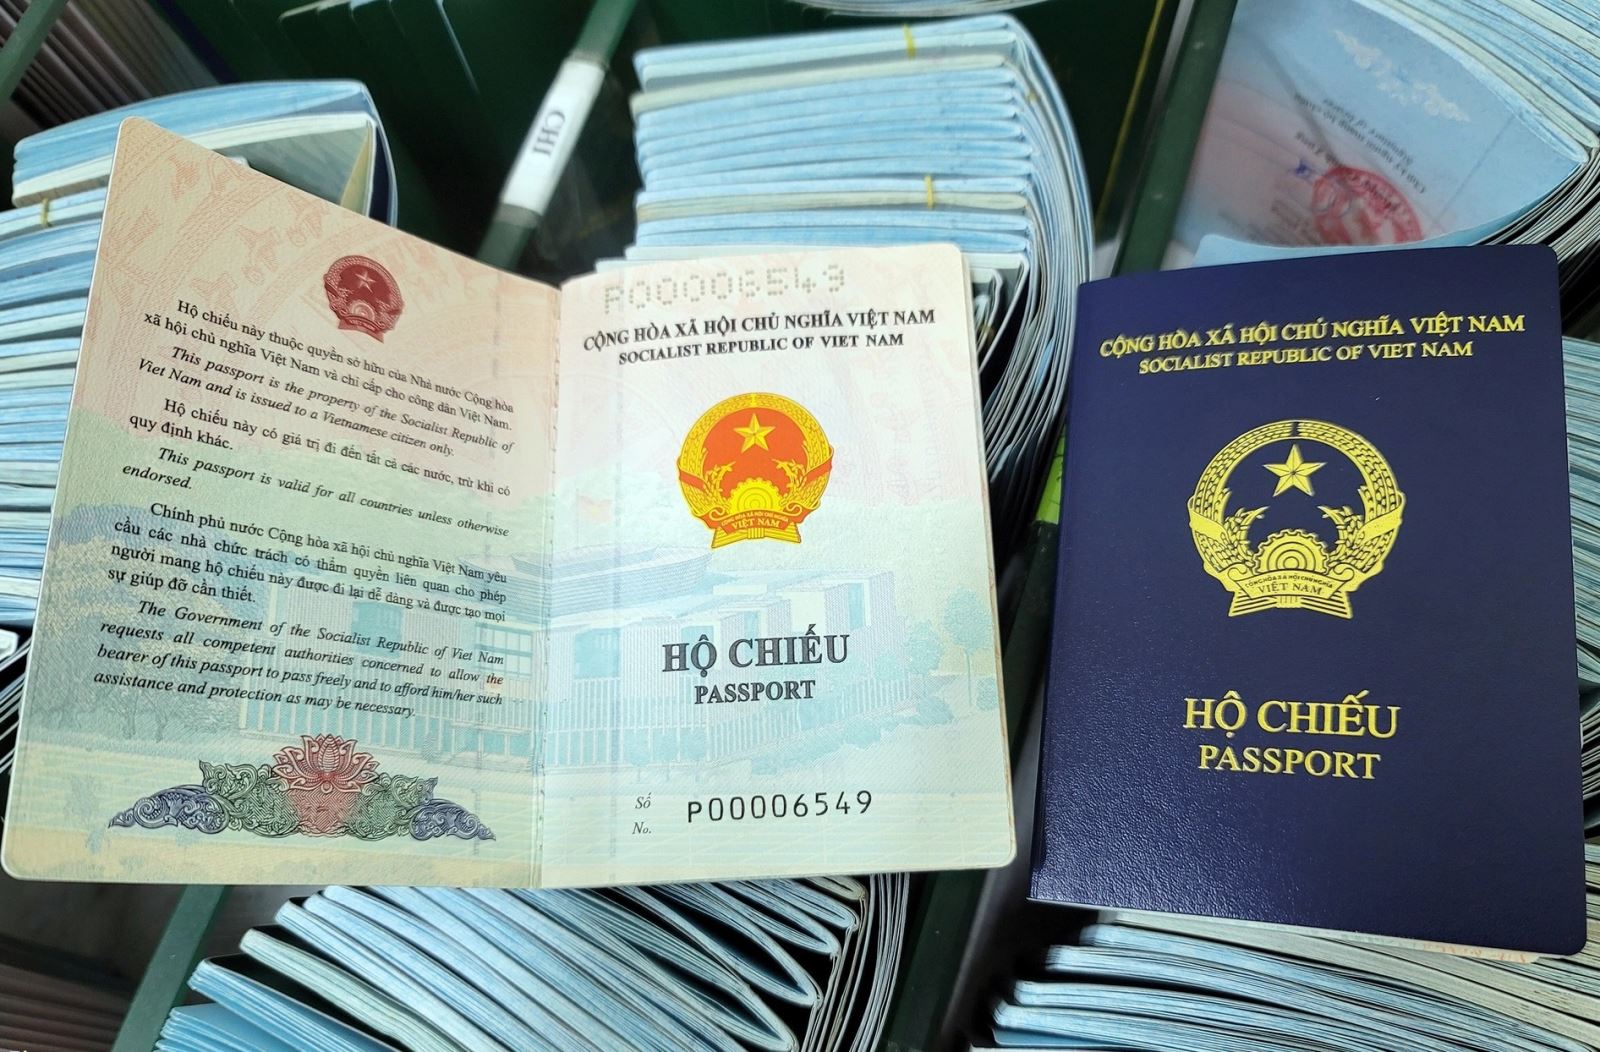 Mẫu hộ chiếu: Mẫu hộ chiếu giúp bạn có thể đi đến bất cứ đâu trên thế giới một cách dễ dàng. Hãy xem các mẫu hộ chiếu để lựa chọn cho mình bộ mẫu phù hợp nhất với nhu cầu của bạn.